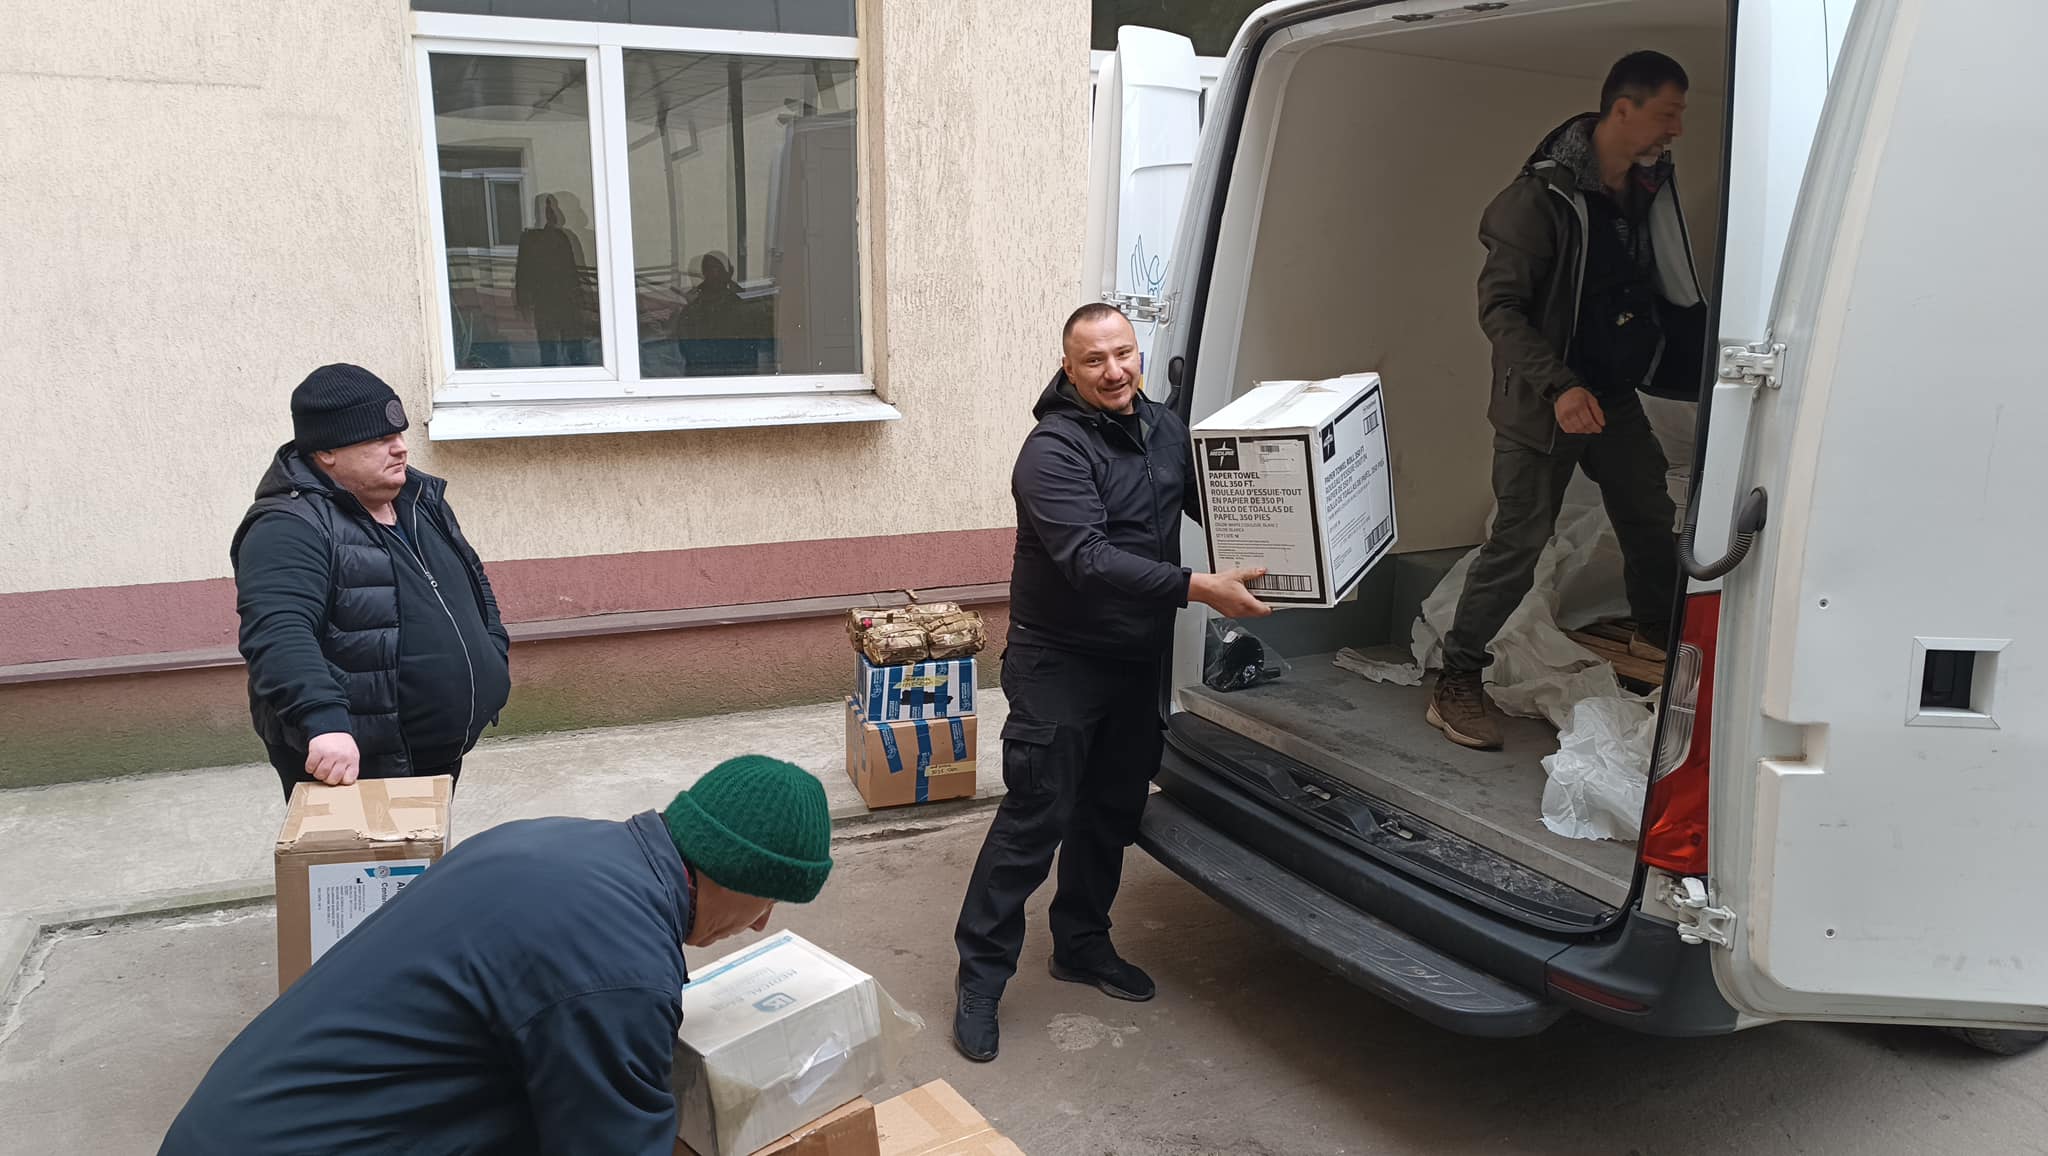 Медики Слов'янська отримали від волонтерів благодійну допомогу